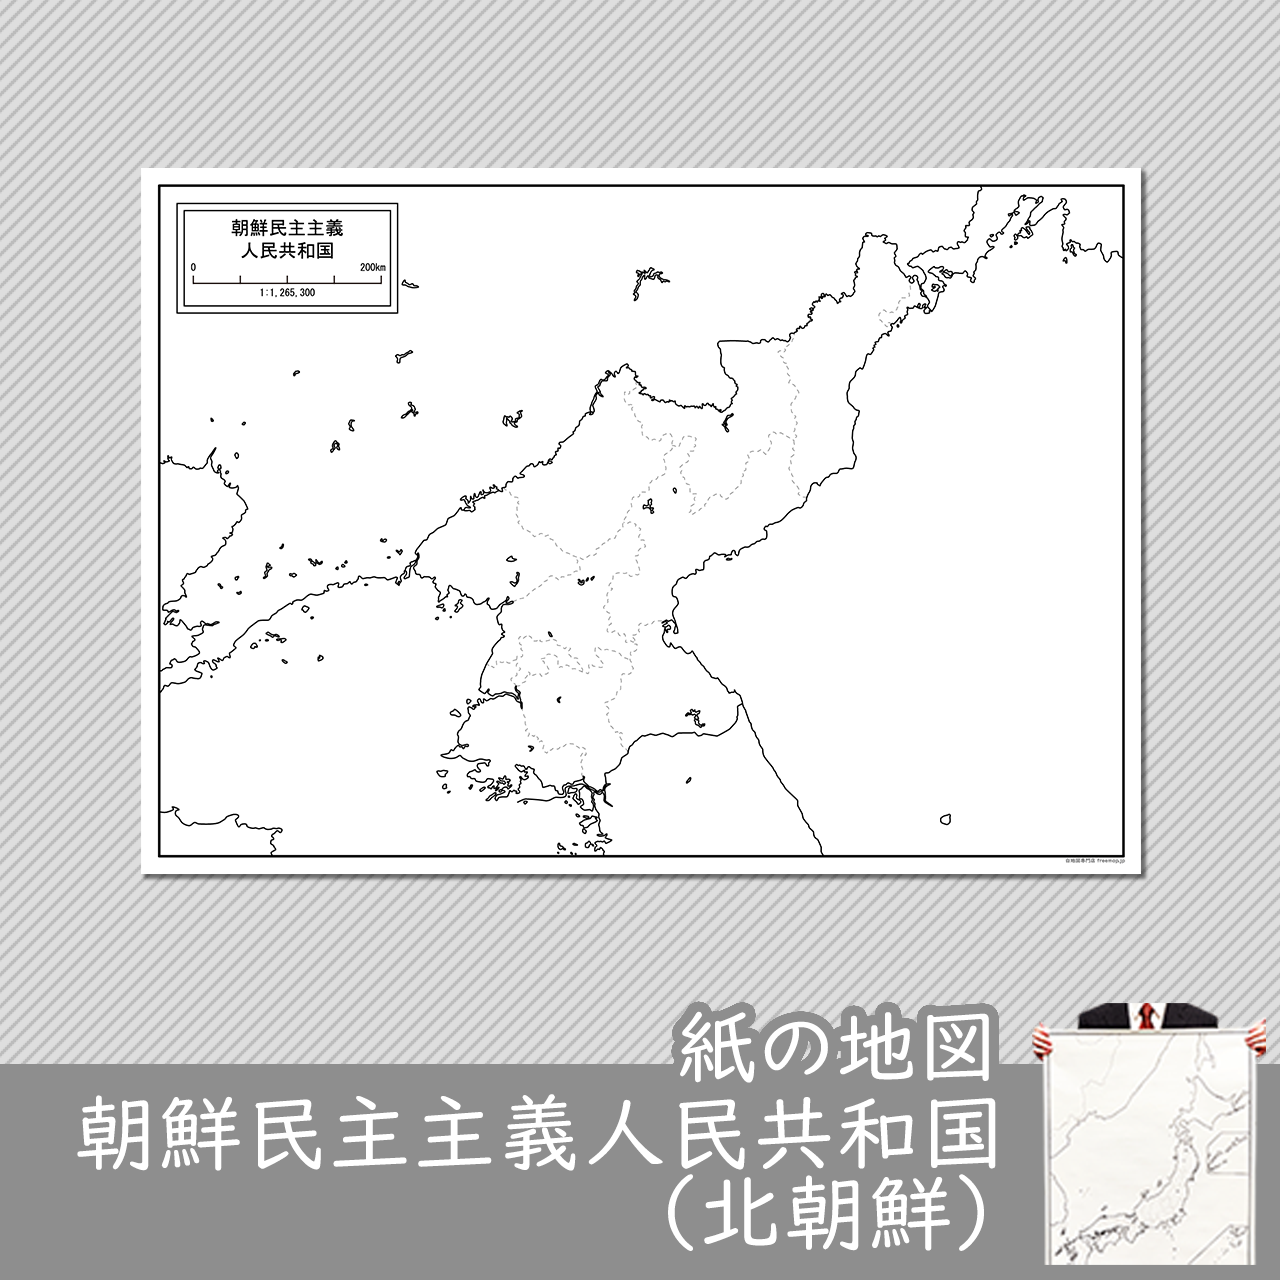 朝鮮民主主義人民共和国の紙の白地図のサムネイル